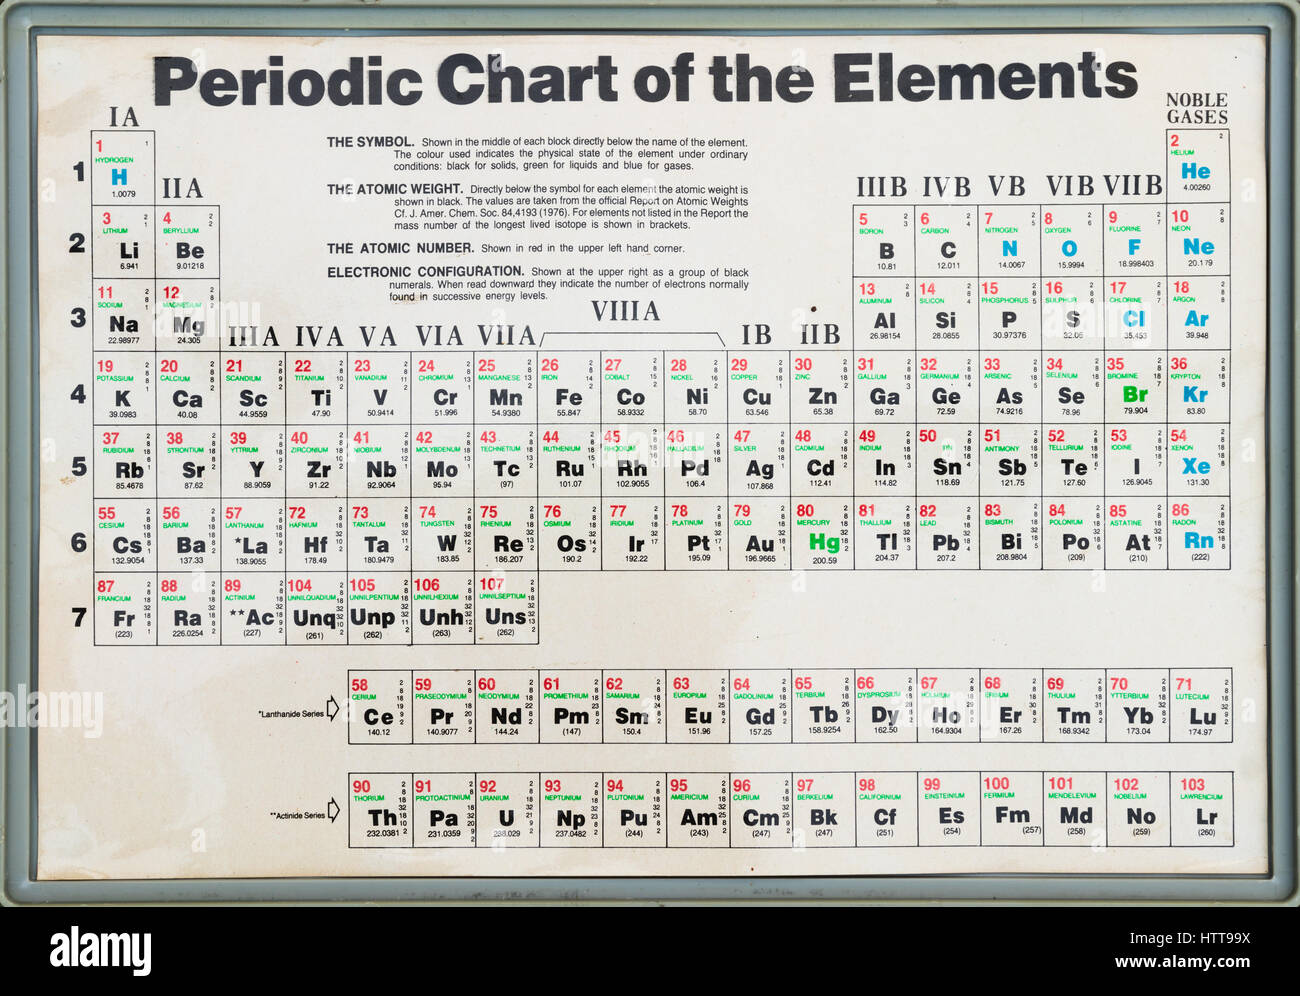 Alte Periodensystem der Elemente mit dem Symbol, Atommasse, Atommasse und Electron Konfiguration jedes Element Stockfoto